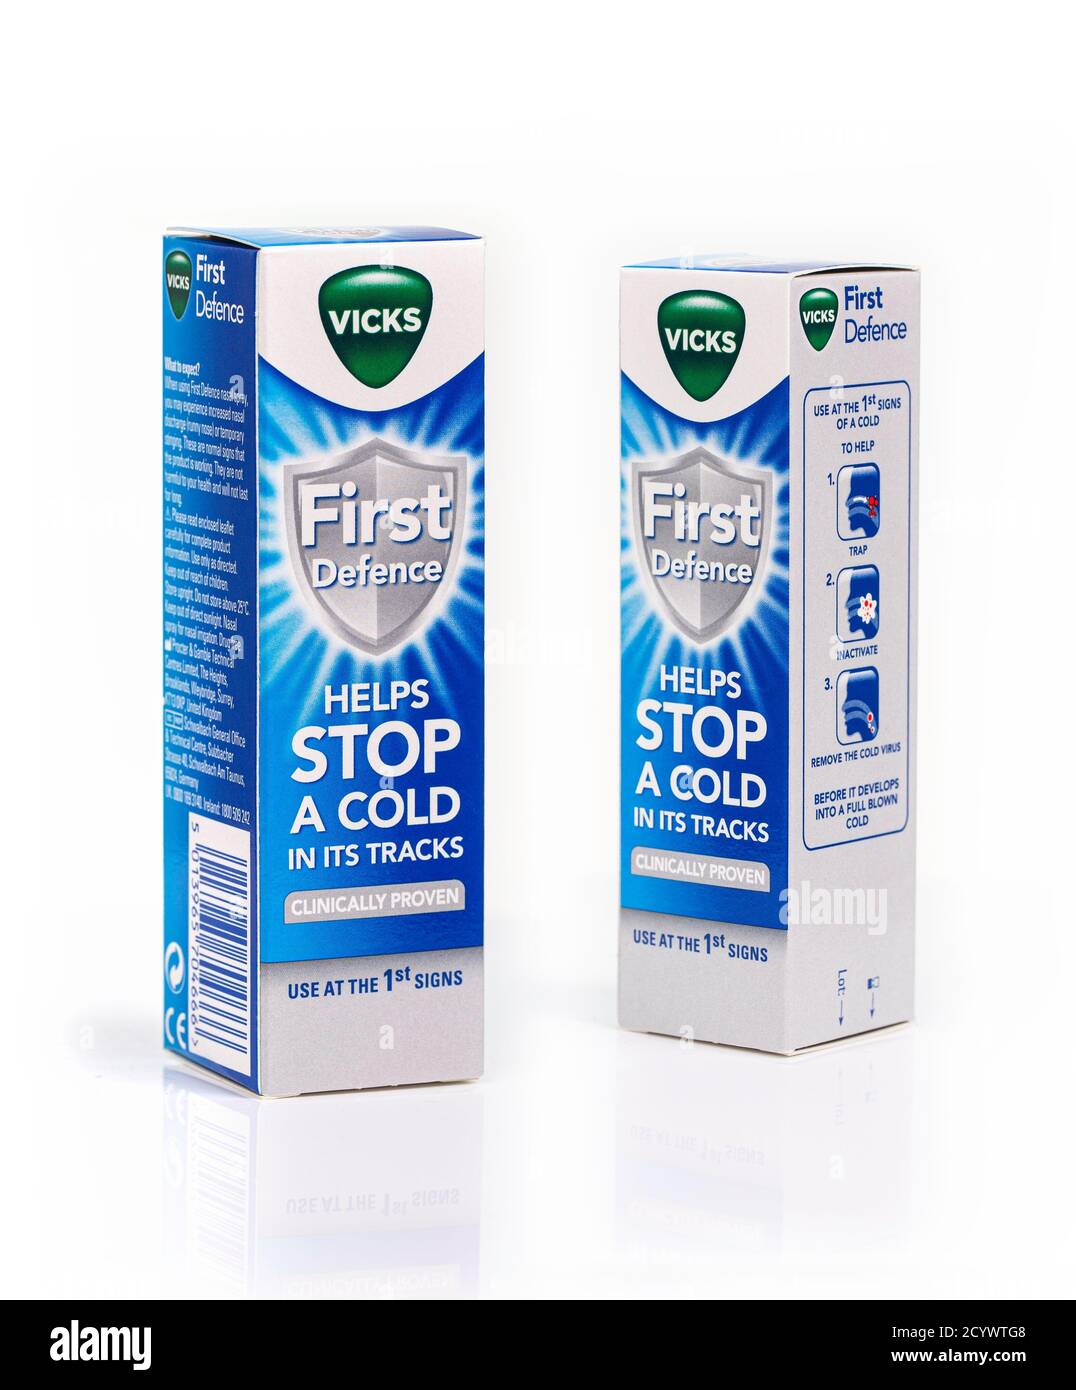 SWINDON, Großbritannien - 2. Oktober 2020: Vicks First Defense Nasenspray hilft, eine Erkältung in seinen Spuren zu stoppen - Einsatz bei den ersten Anzeichen, klinisch erwiesen Stockfoto